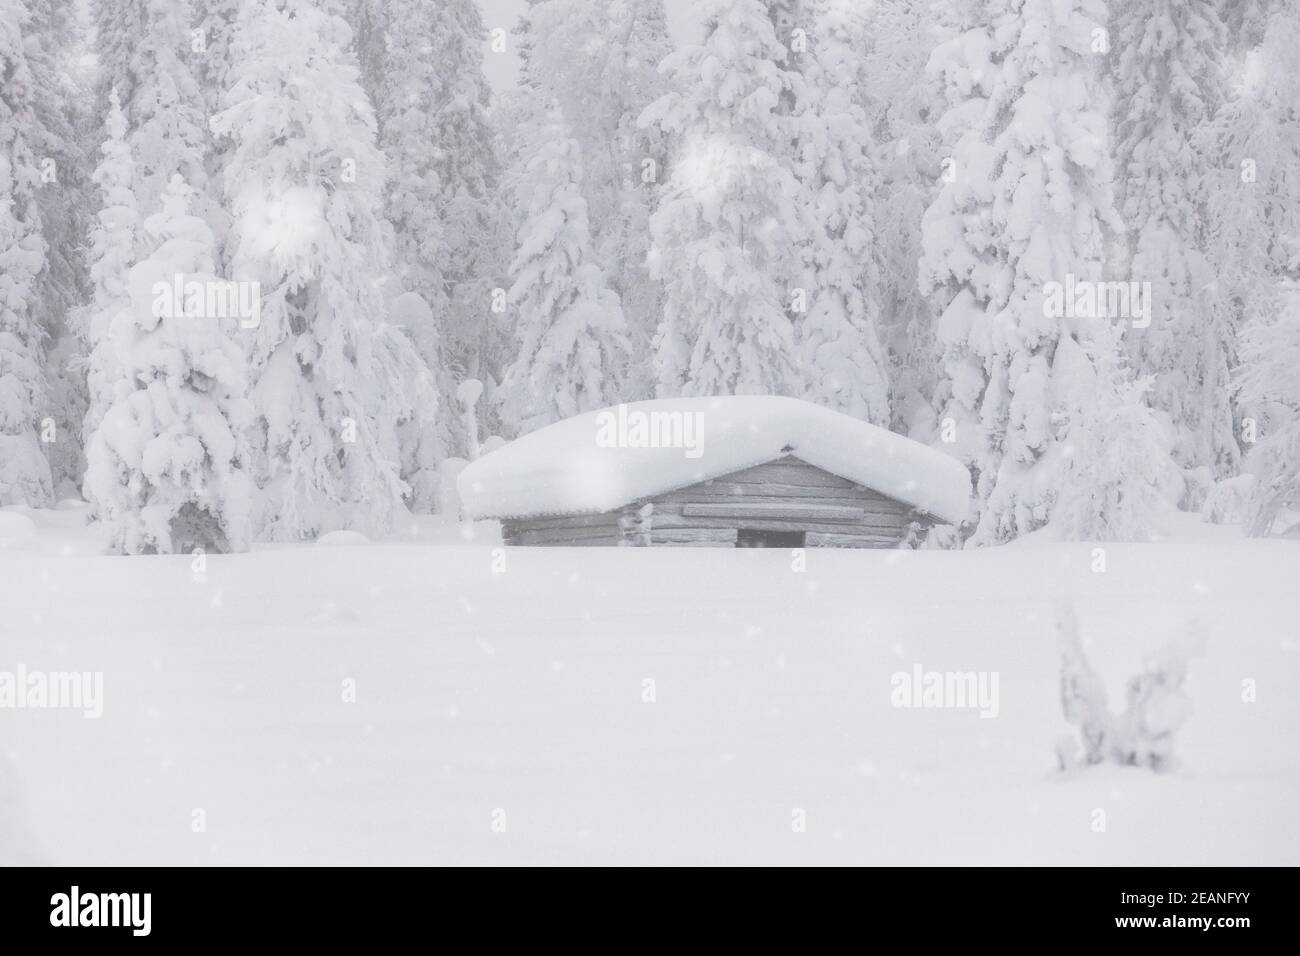 Schneeflocken fallen über Holzhütten und Bäume im mit Schnee bedeckten arktischen Wald, Lappland, Finnland, Europa Stockfoto